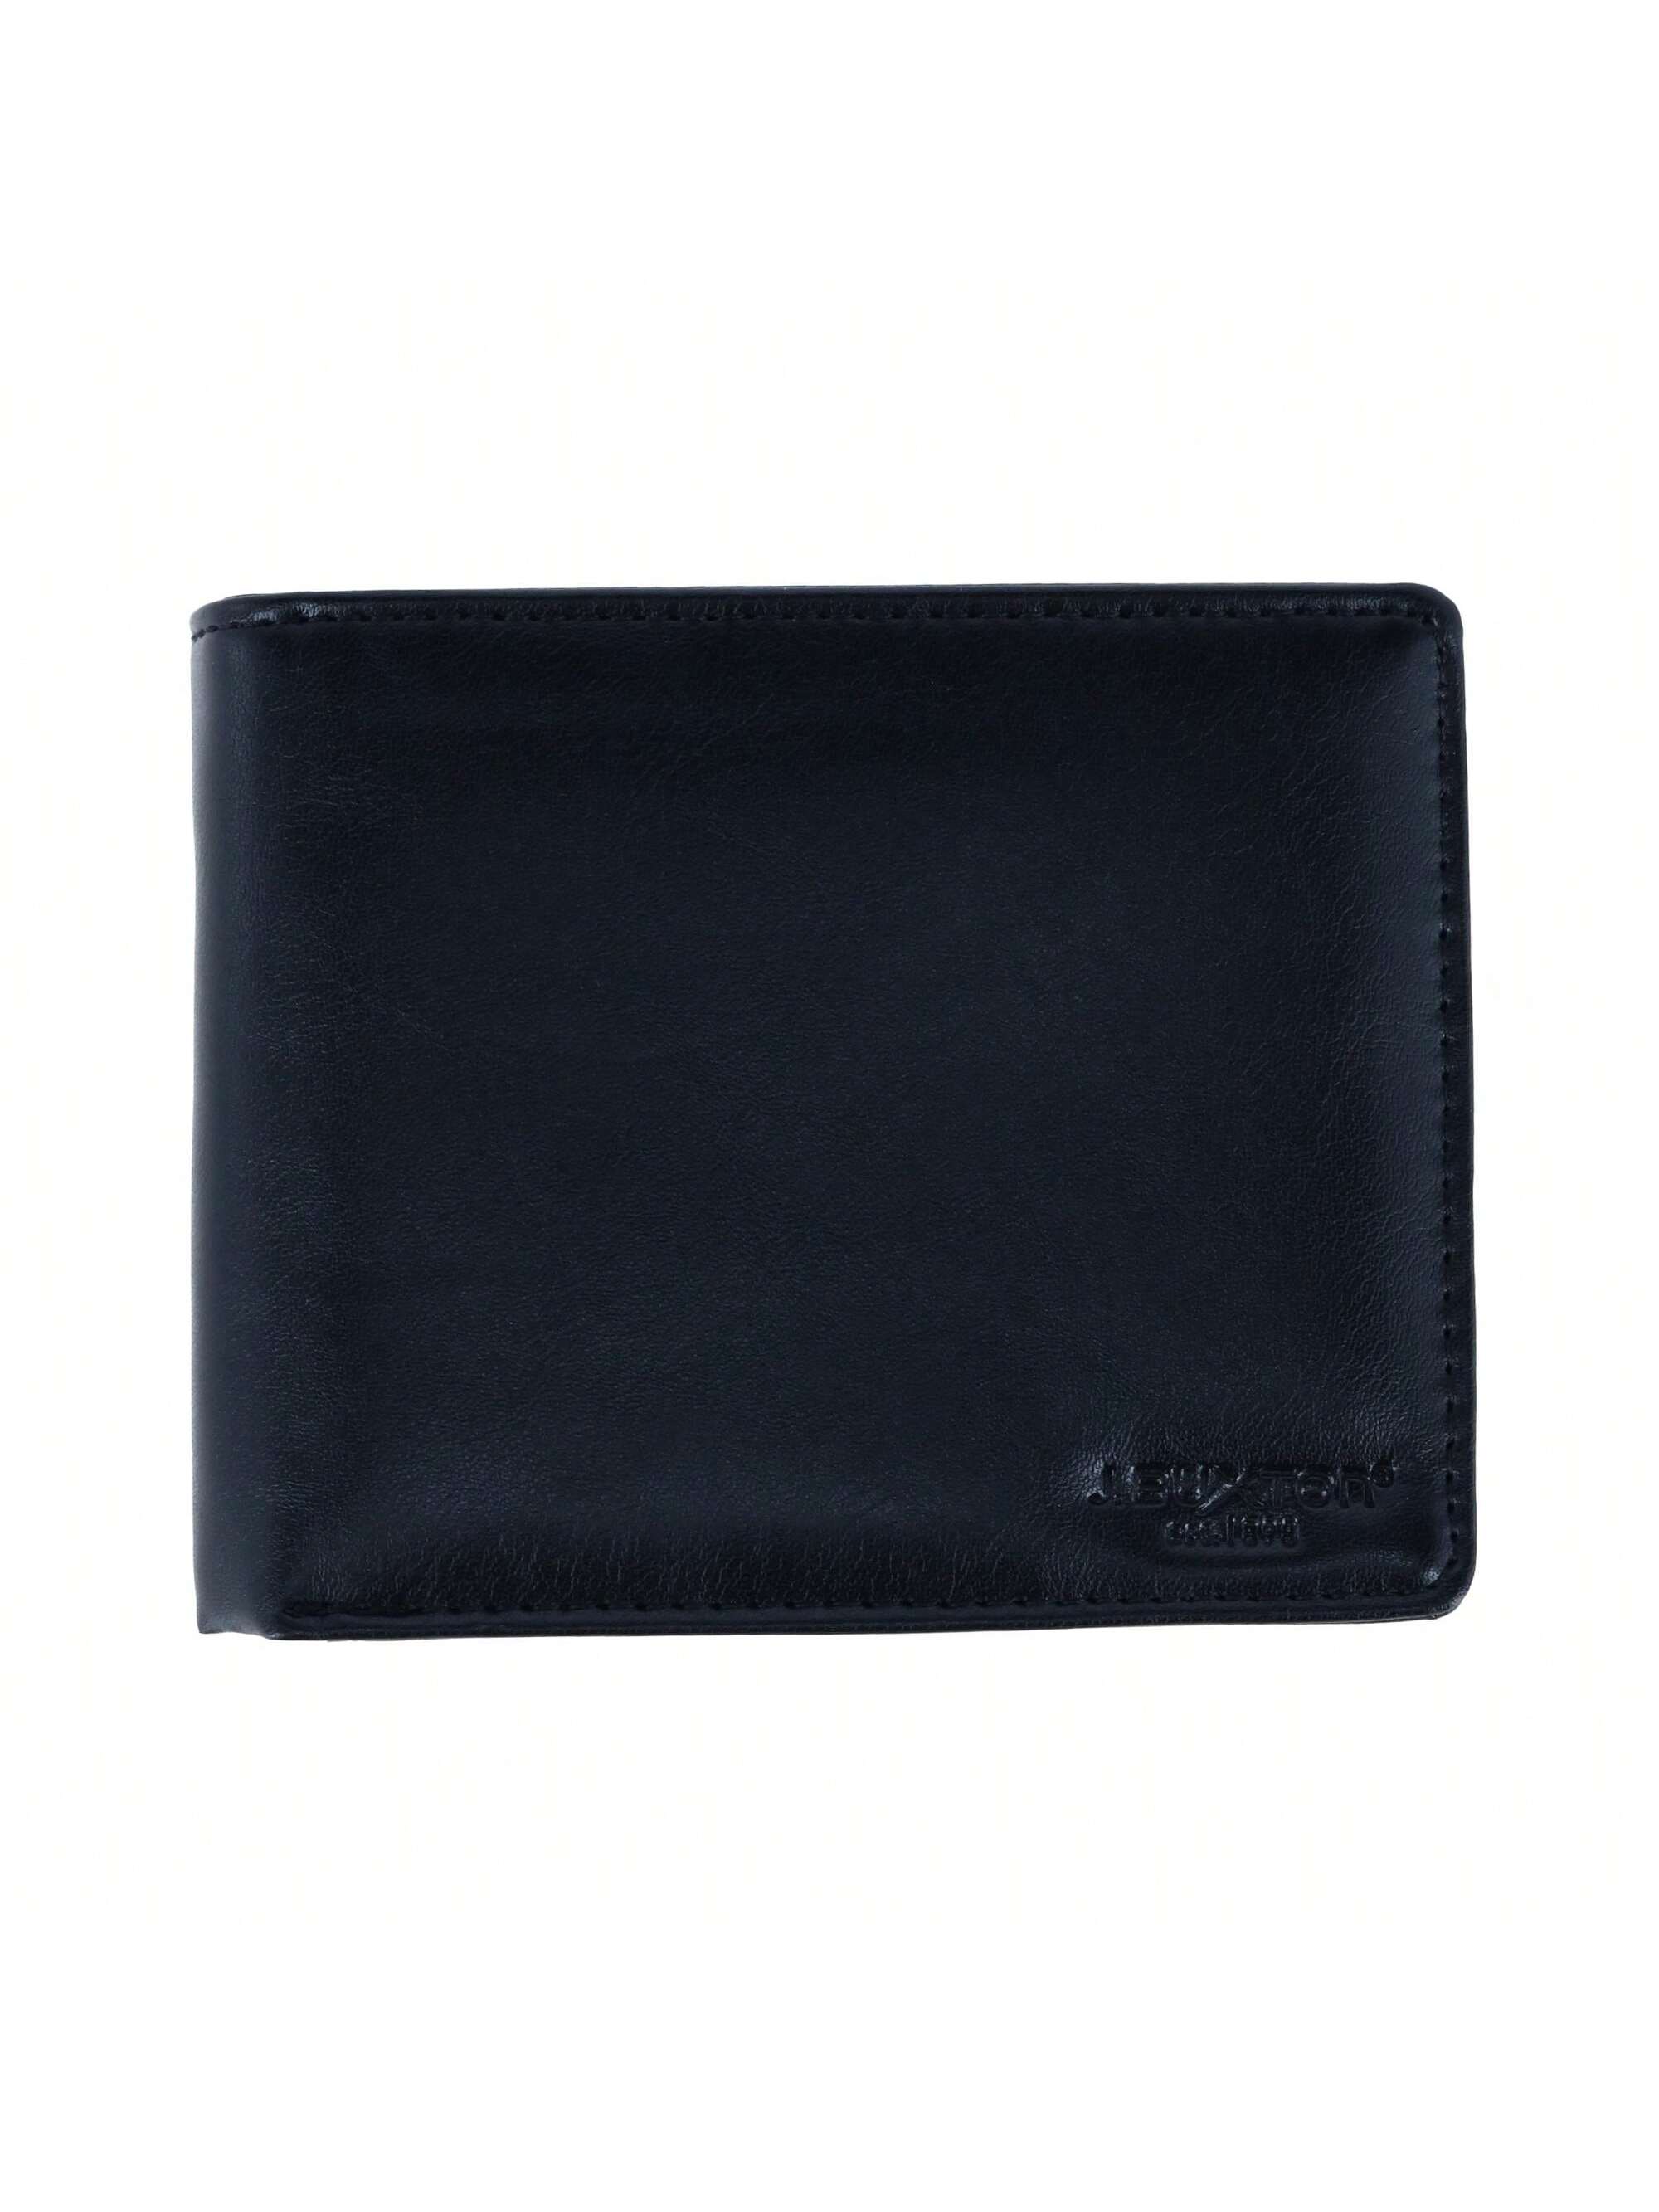 Мужской кошелек Buxton из веганской кожи с RFID-метками и двойным складыванием, черный